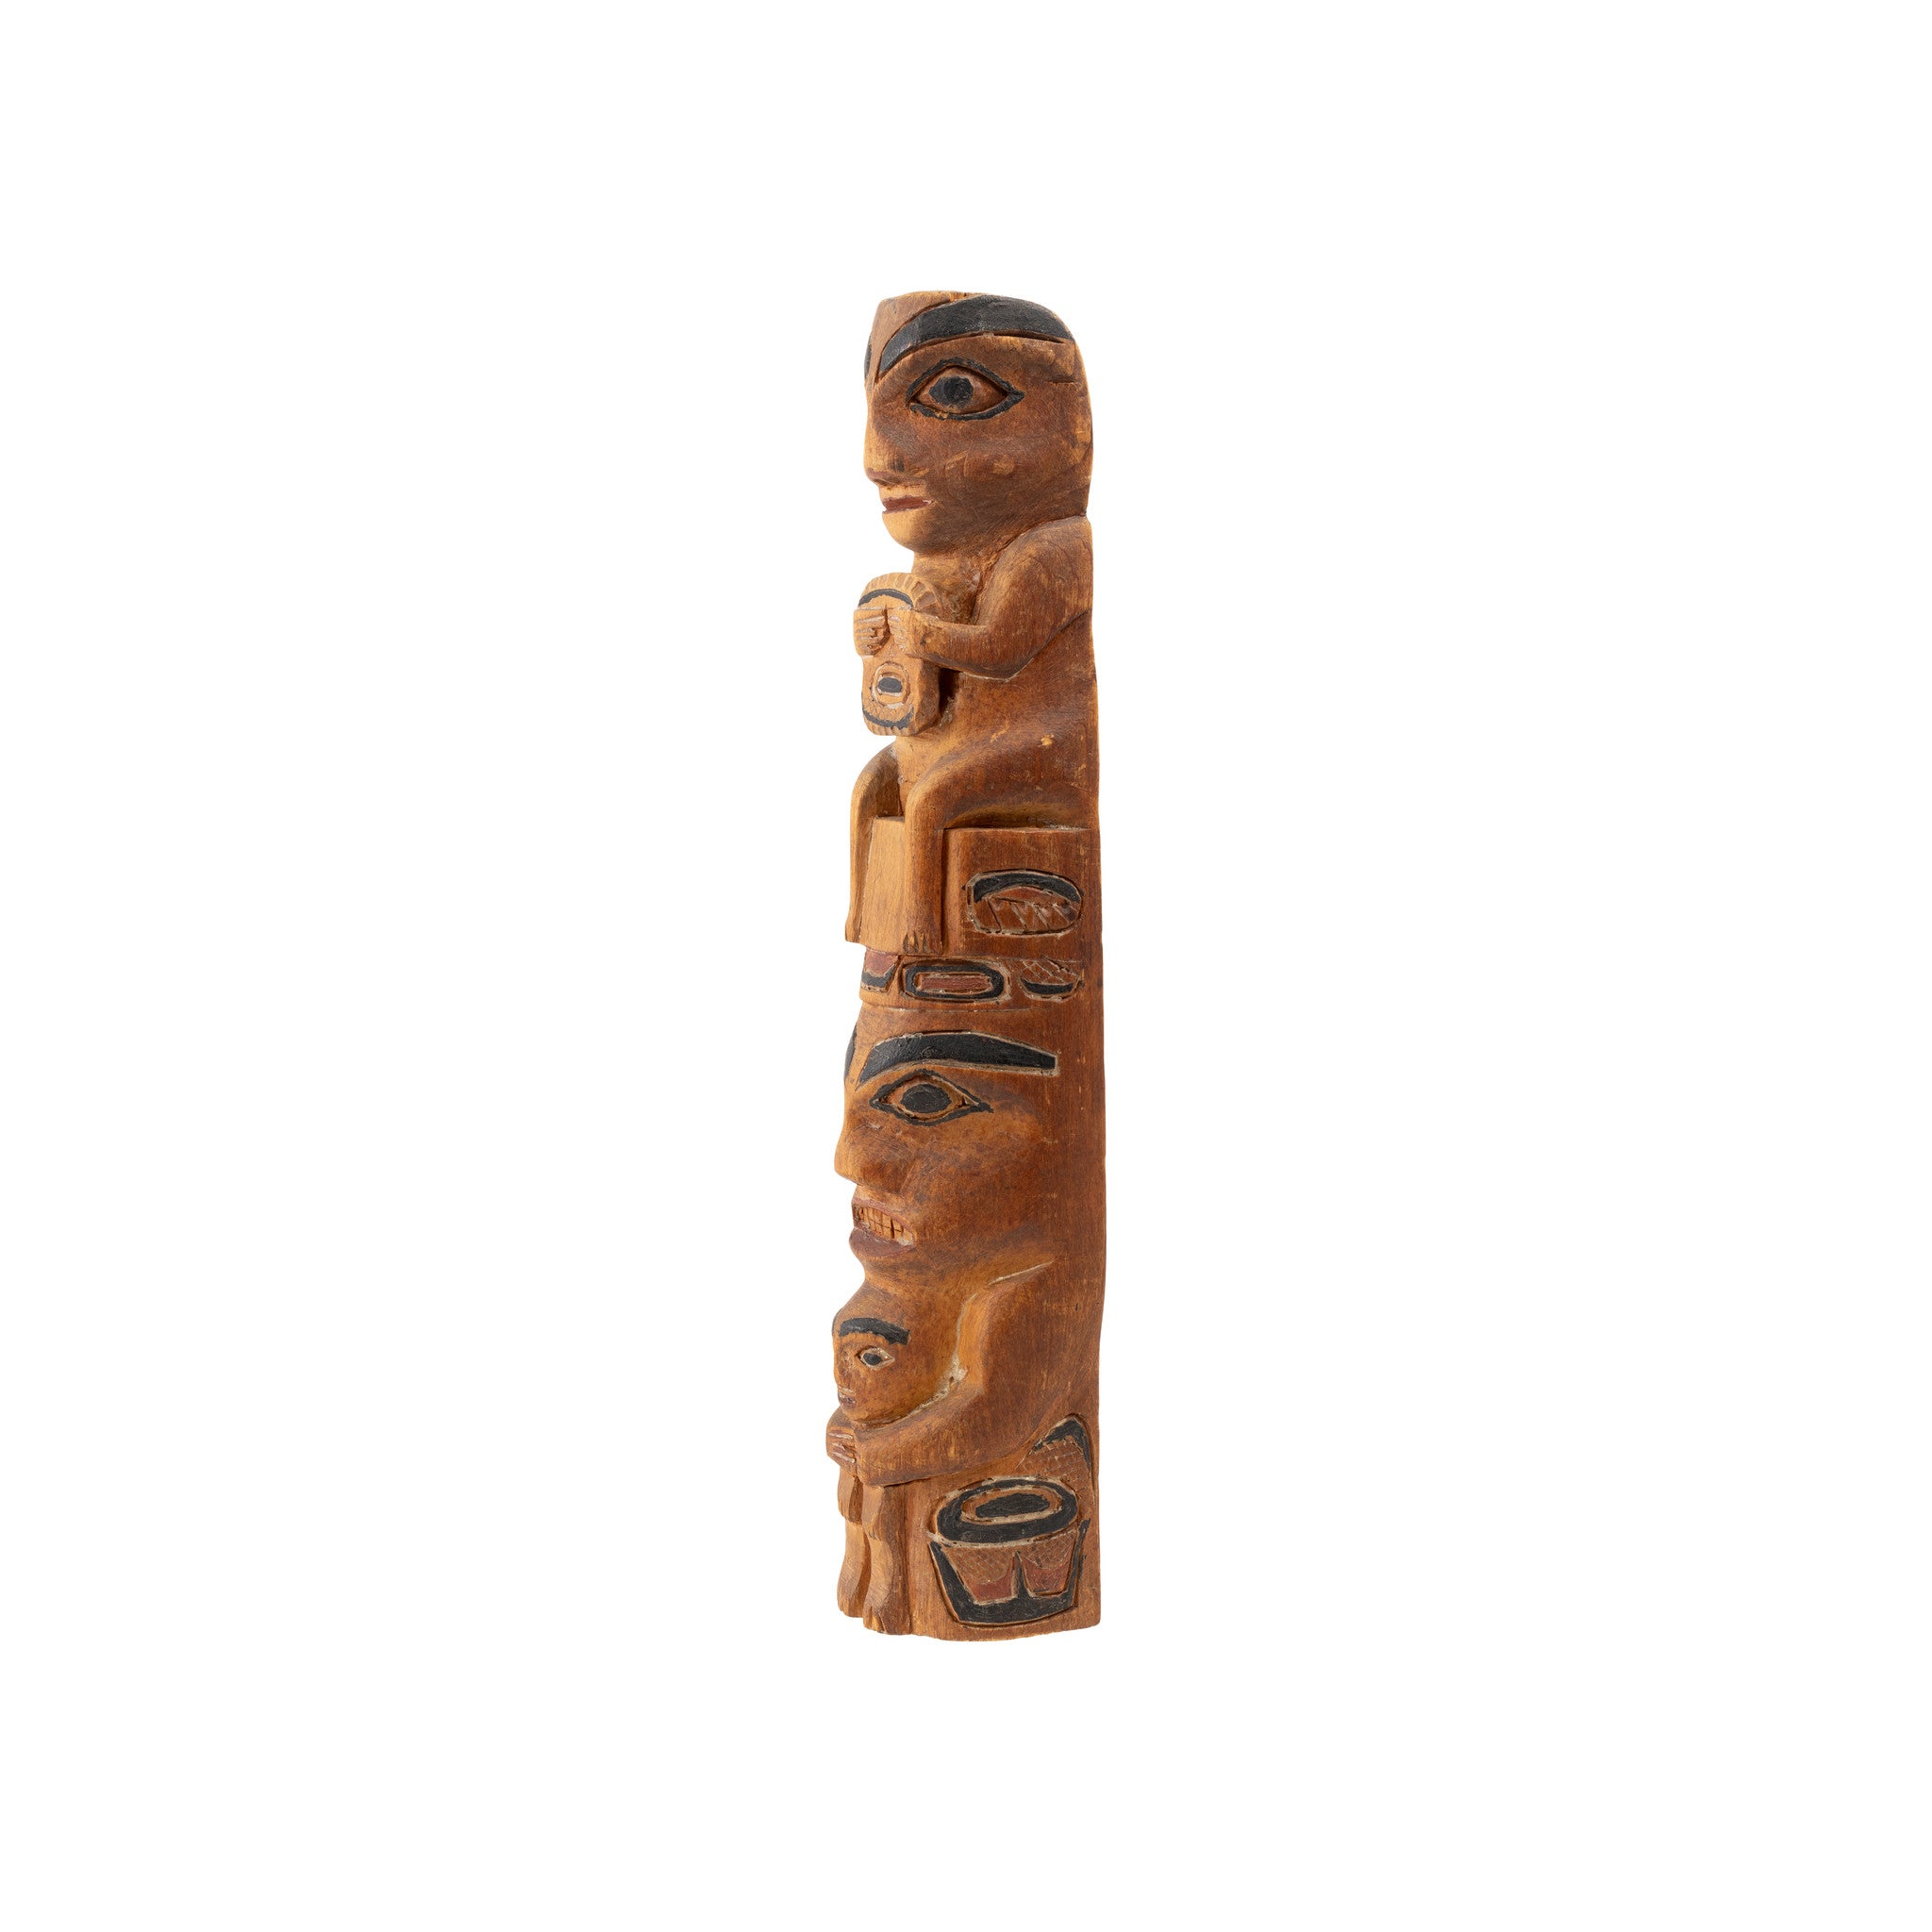 Three Figure Tsimshian Totem Pole